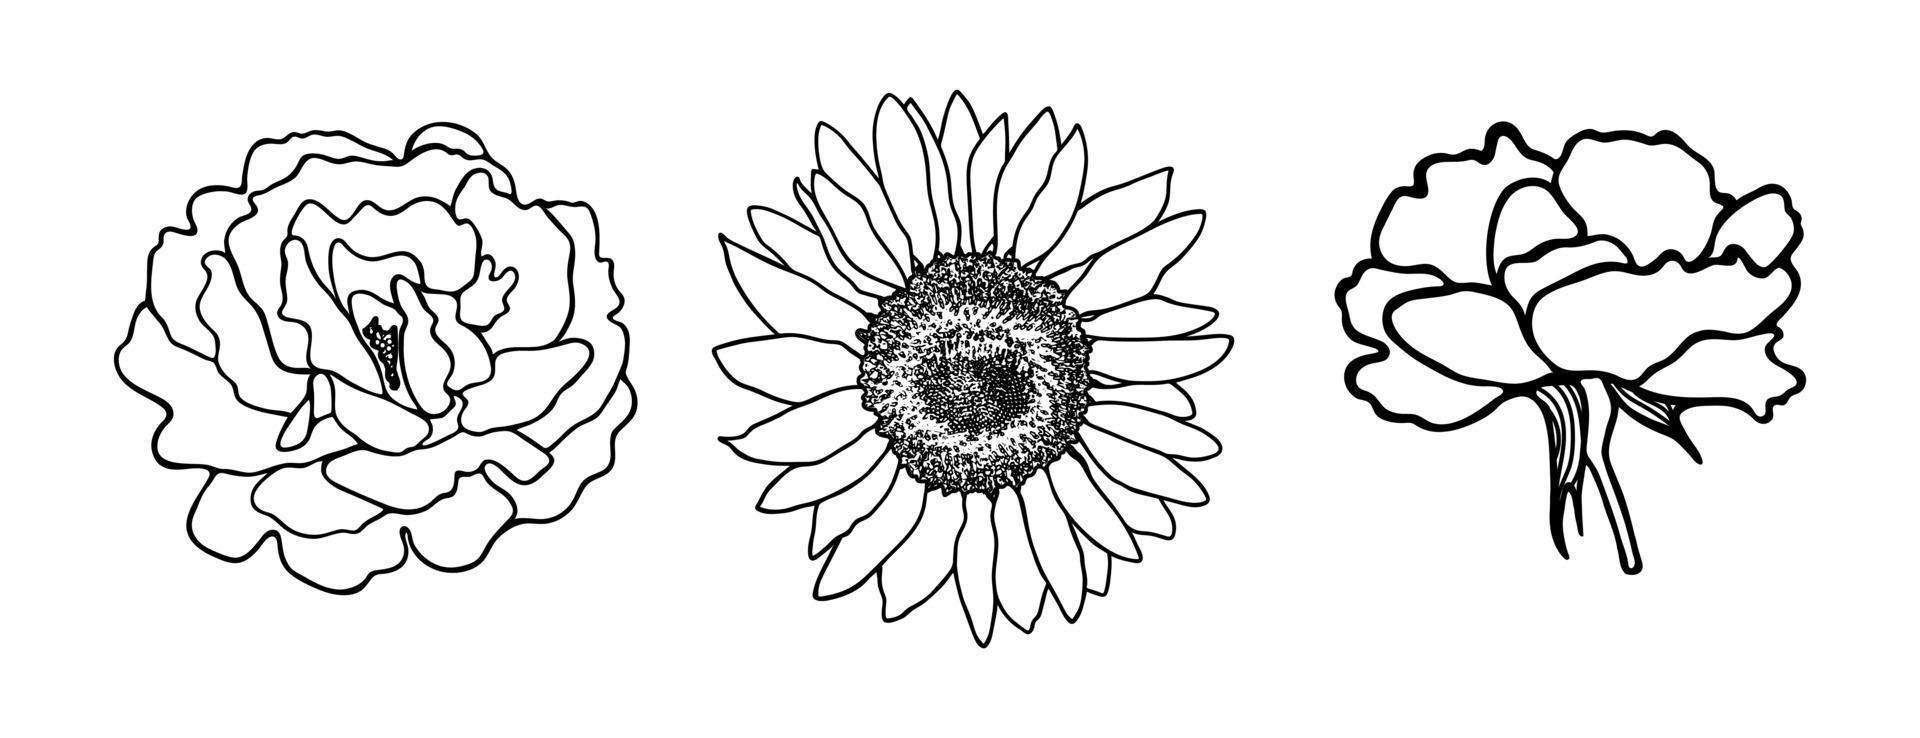 lilja blomma minimal botanisk teckning. vektor uppsättning blommiga element för design. doodle set element. illustration vektorgrafik.